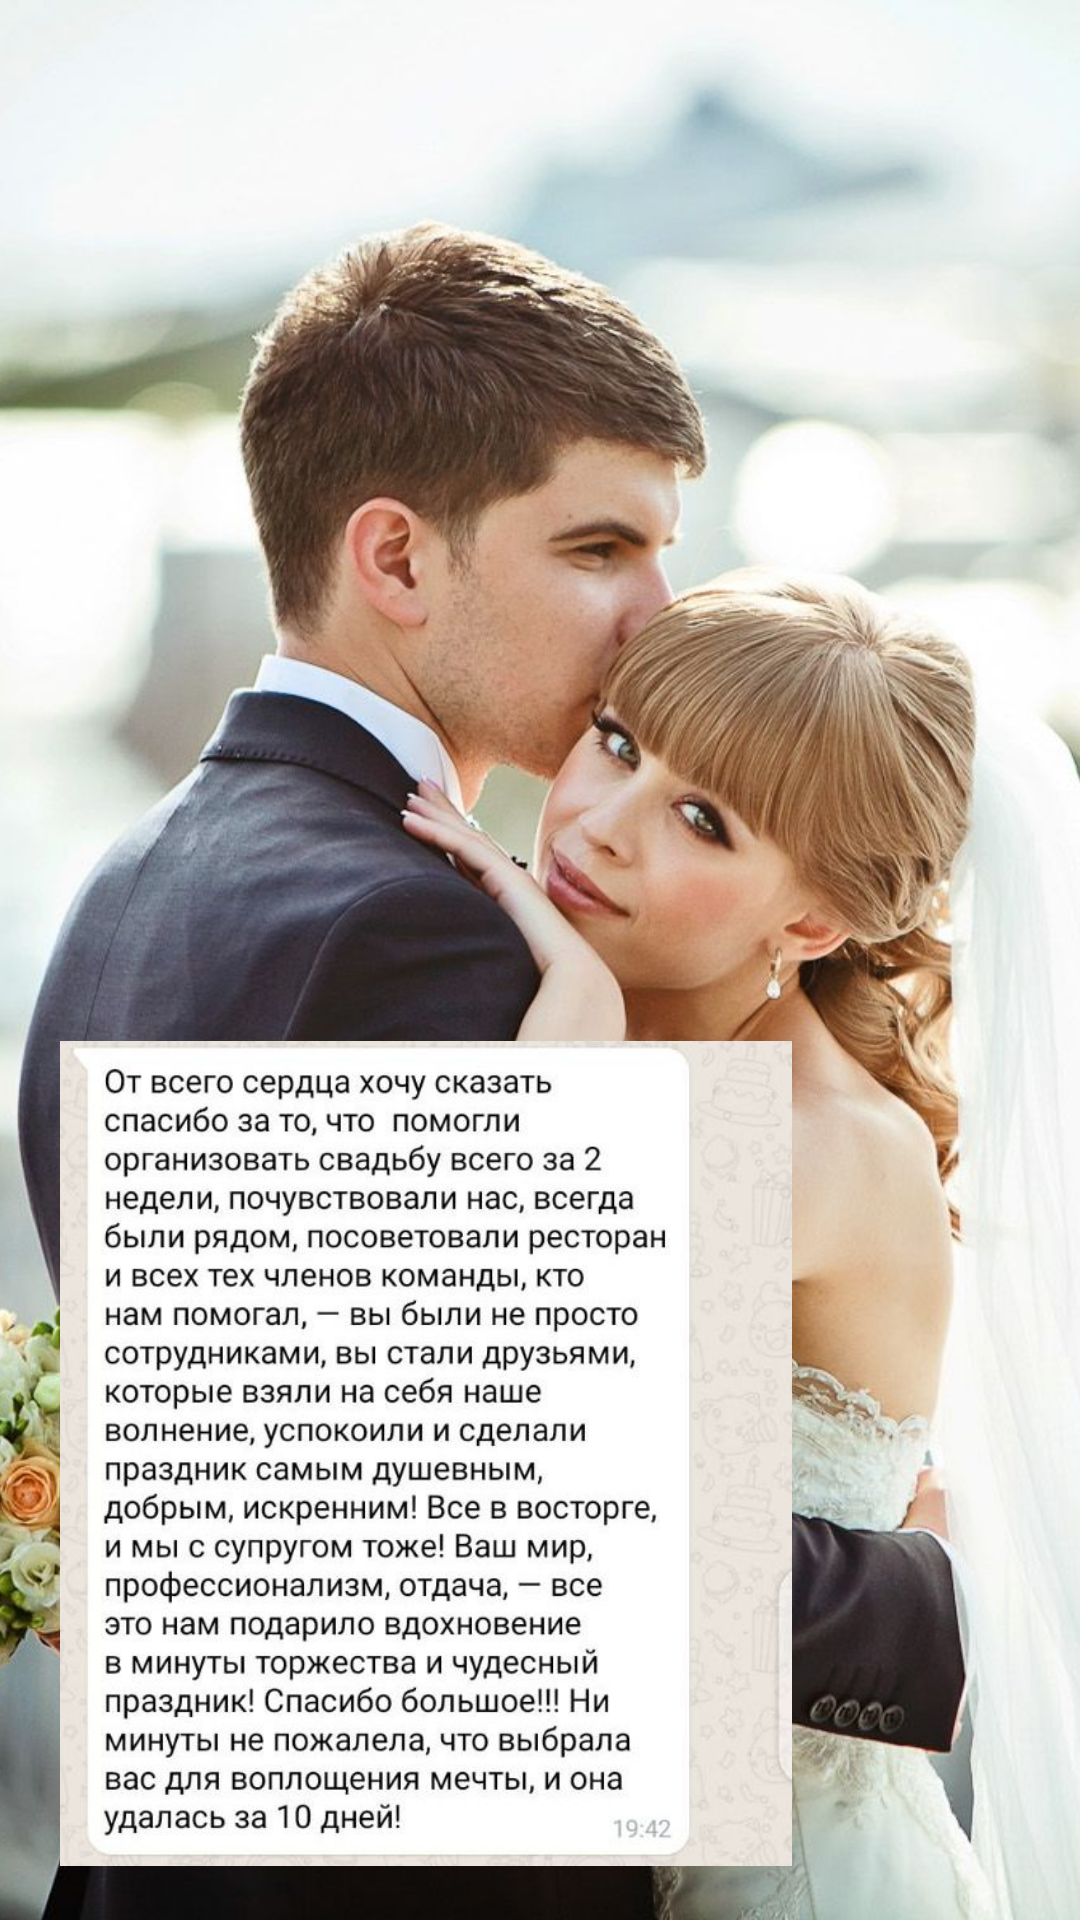 Организация свадьбы в Подольске
от компании Pandaevent